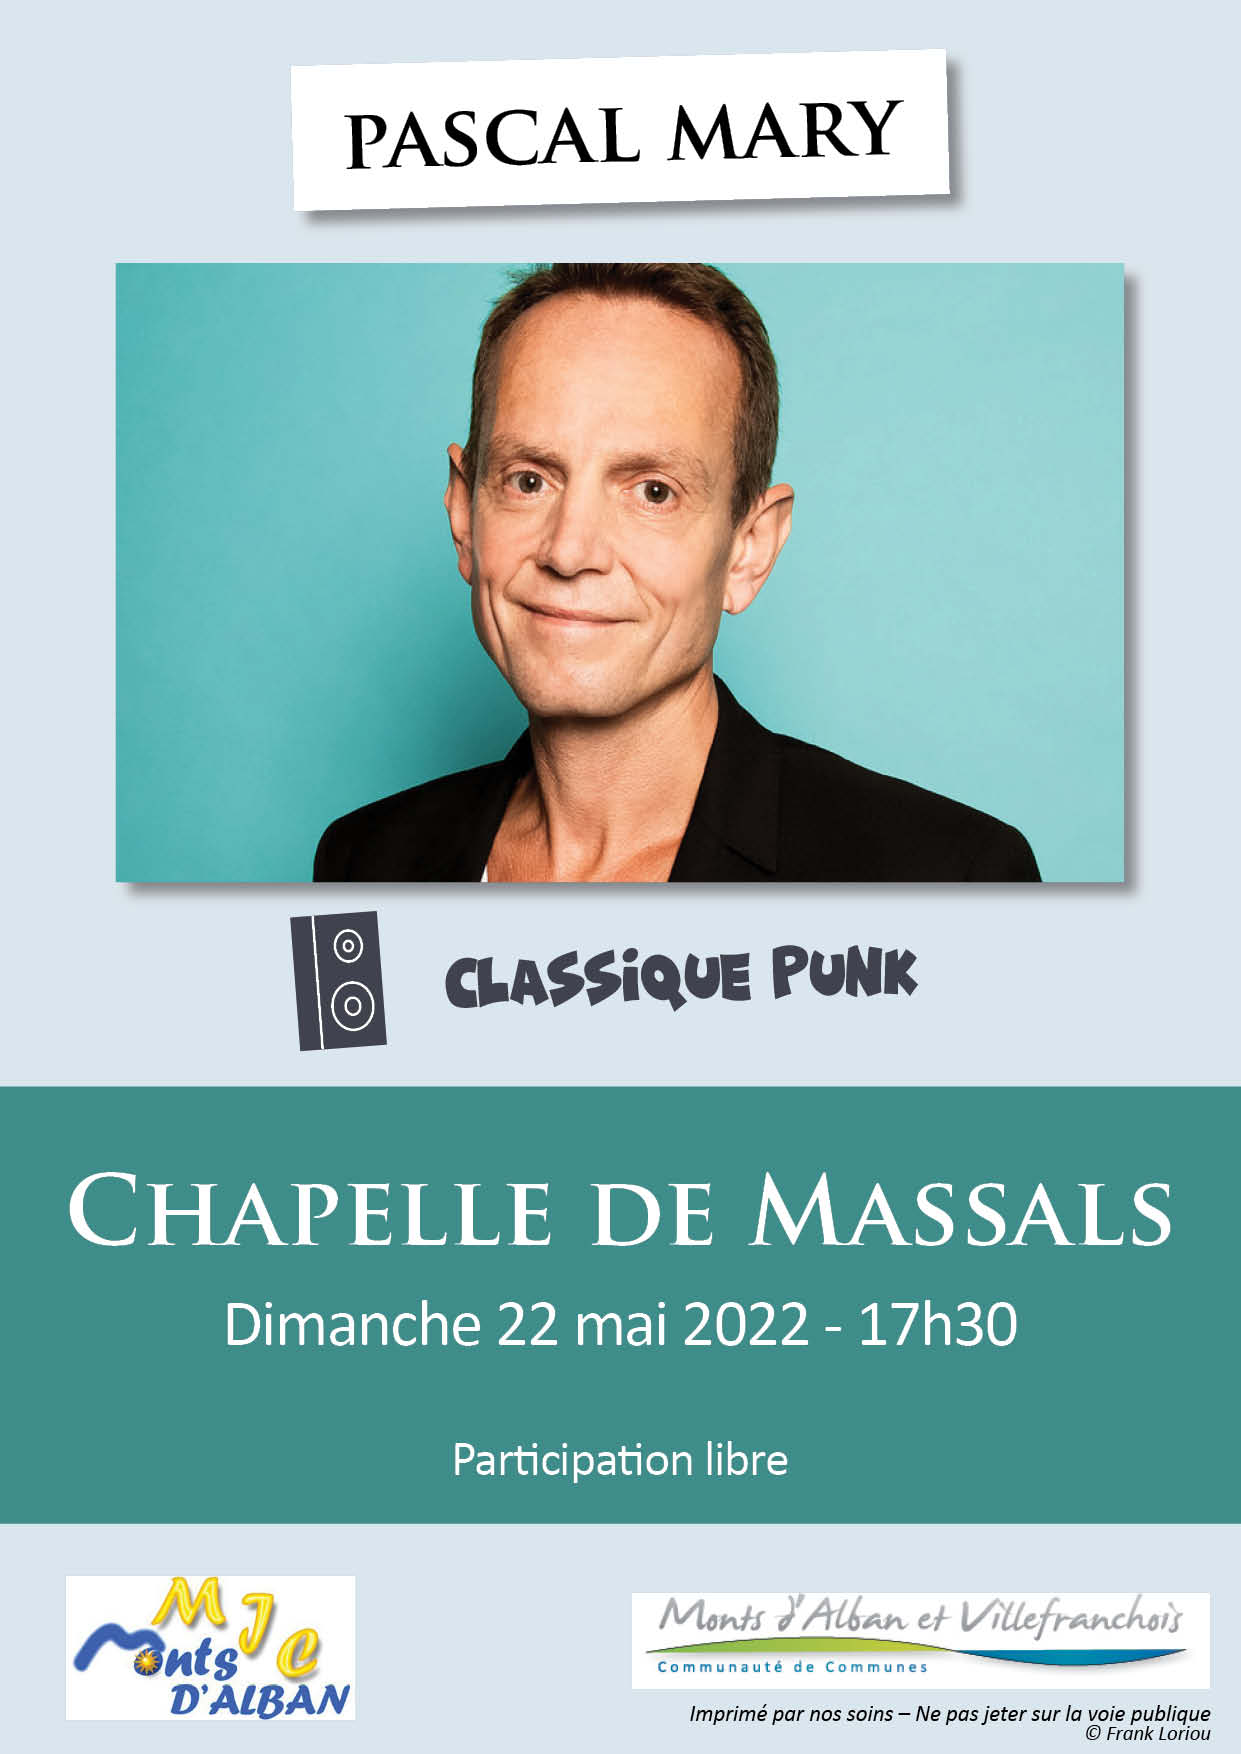 Concert à la Chapelle de Massals le 22 mai avec Pascal Mary